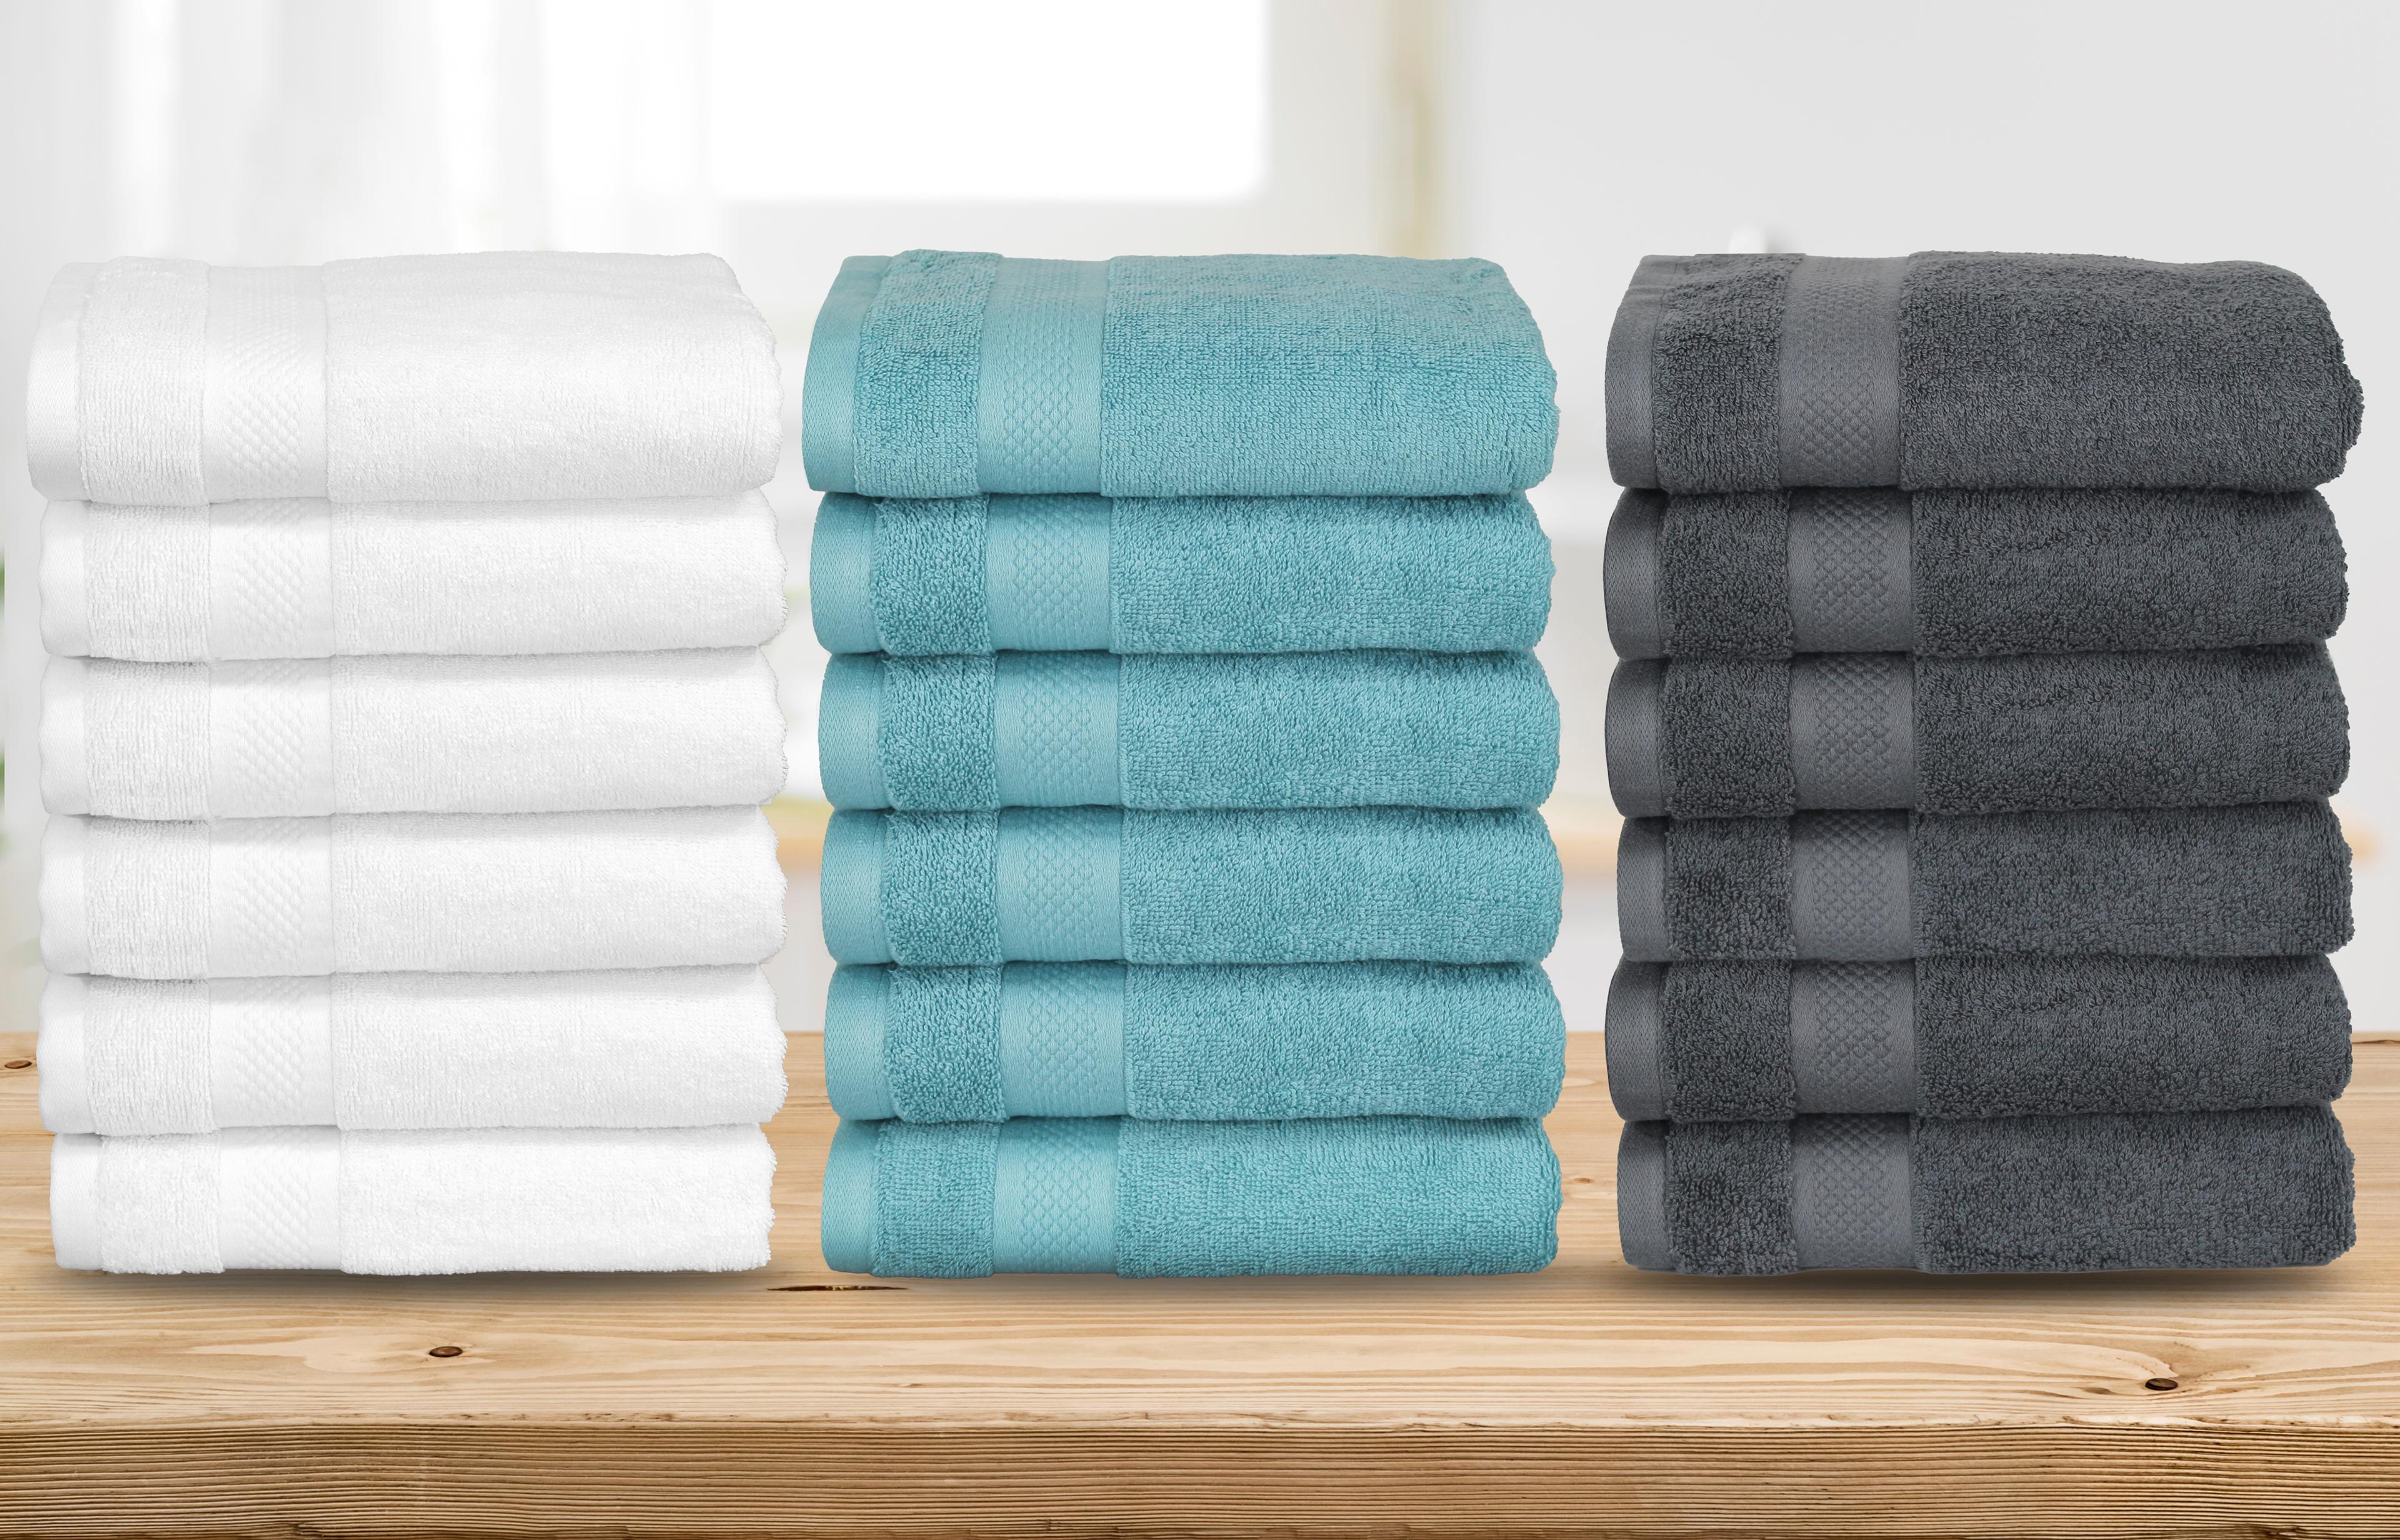 6 handdoeken van hotelkwaliteit